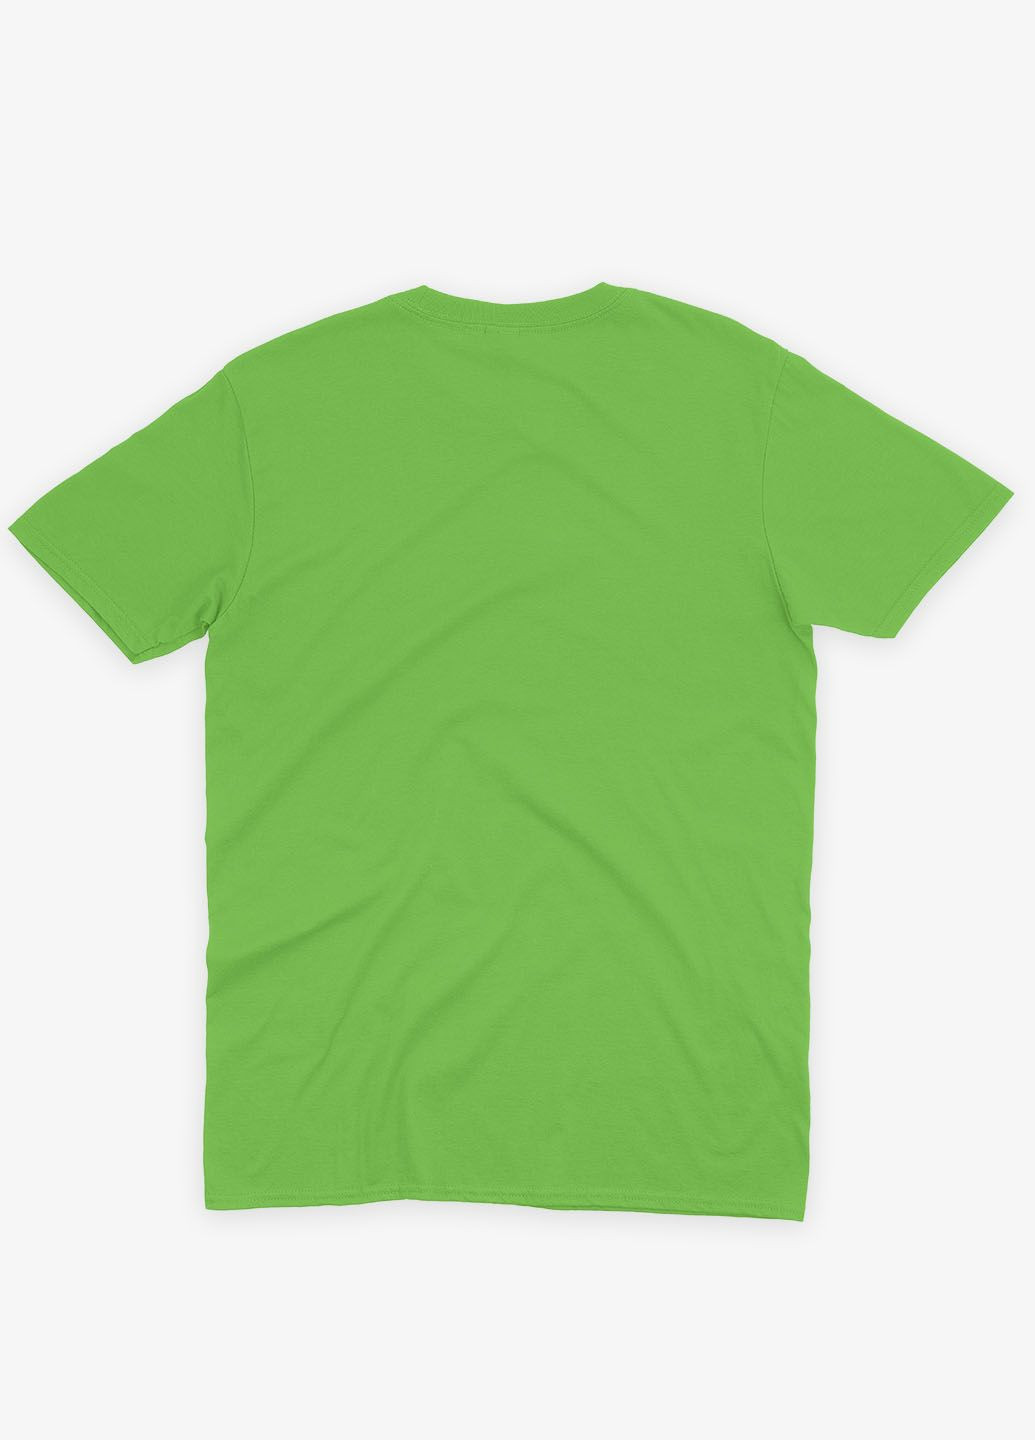 Салатовая демисезонная футболка для мальчика с патриотическим принтом лодони (ts001-2-kiw-005-1-032-b) Modno